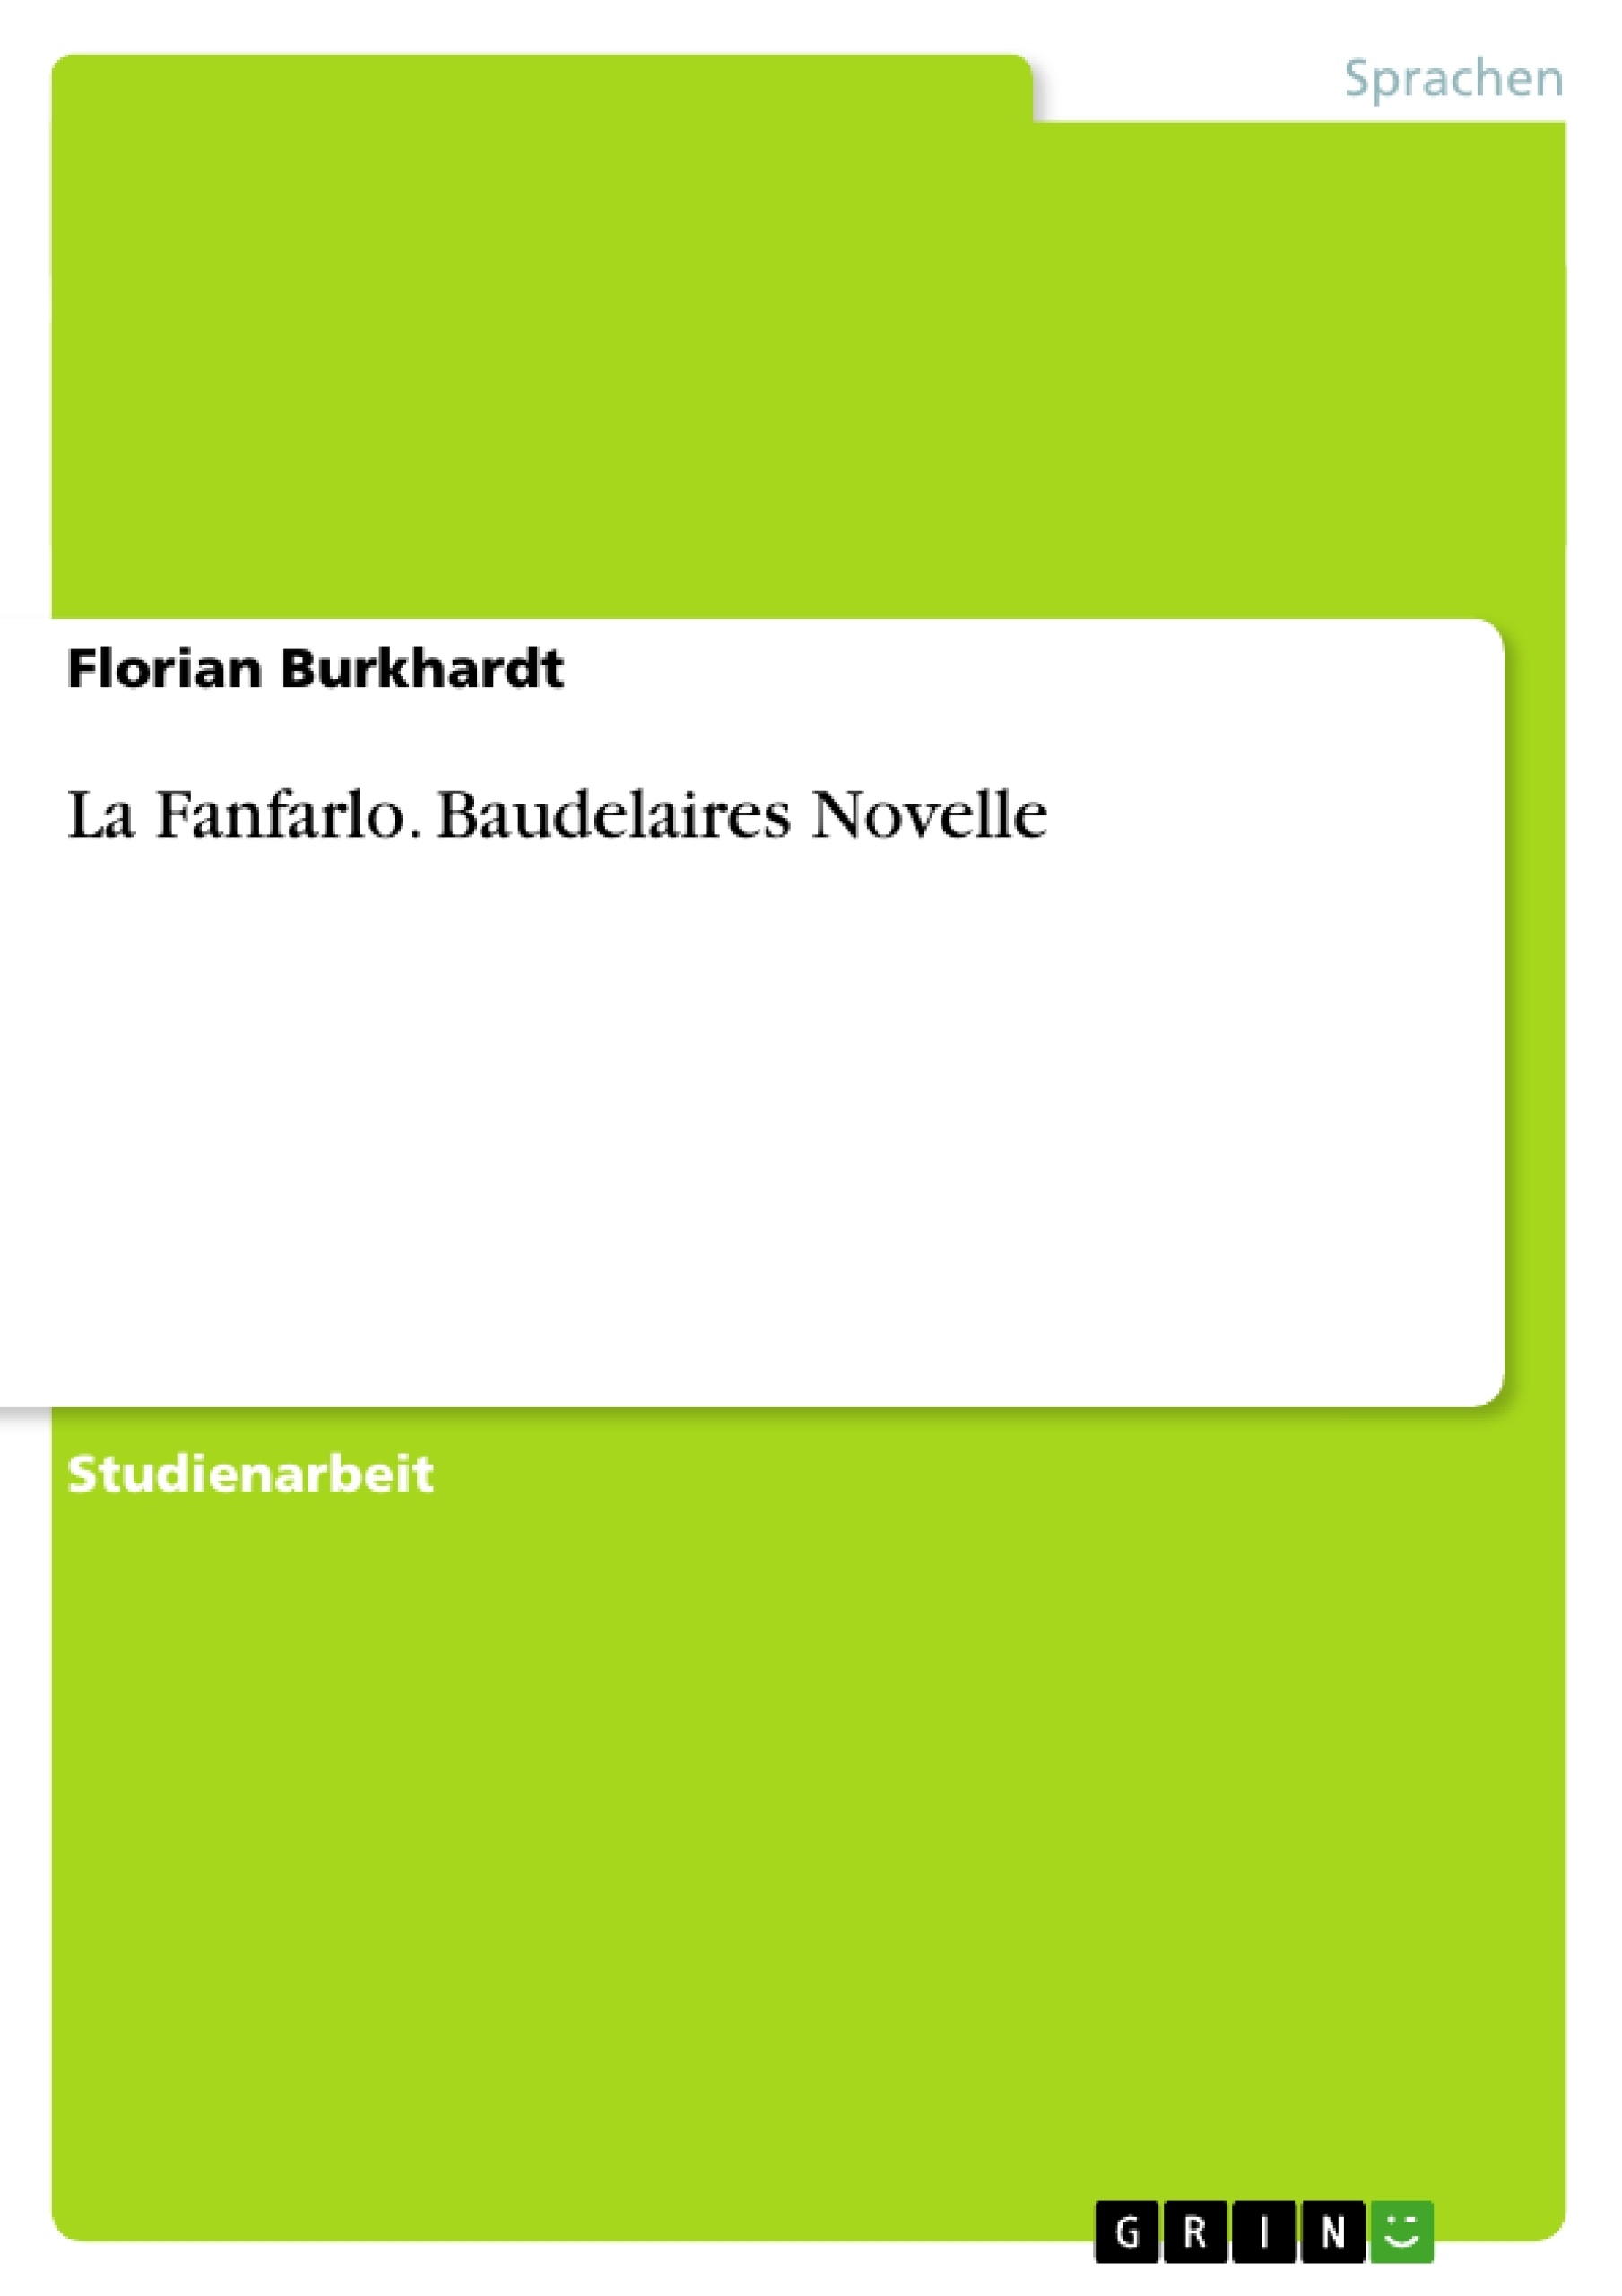 Titre: La Fanfarlo. Baudelaires Novelle